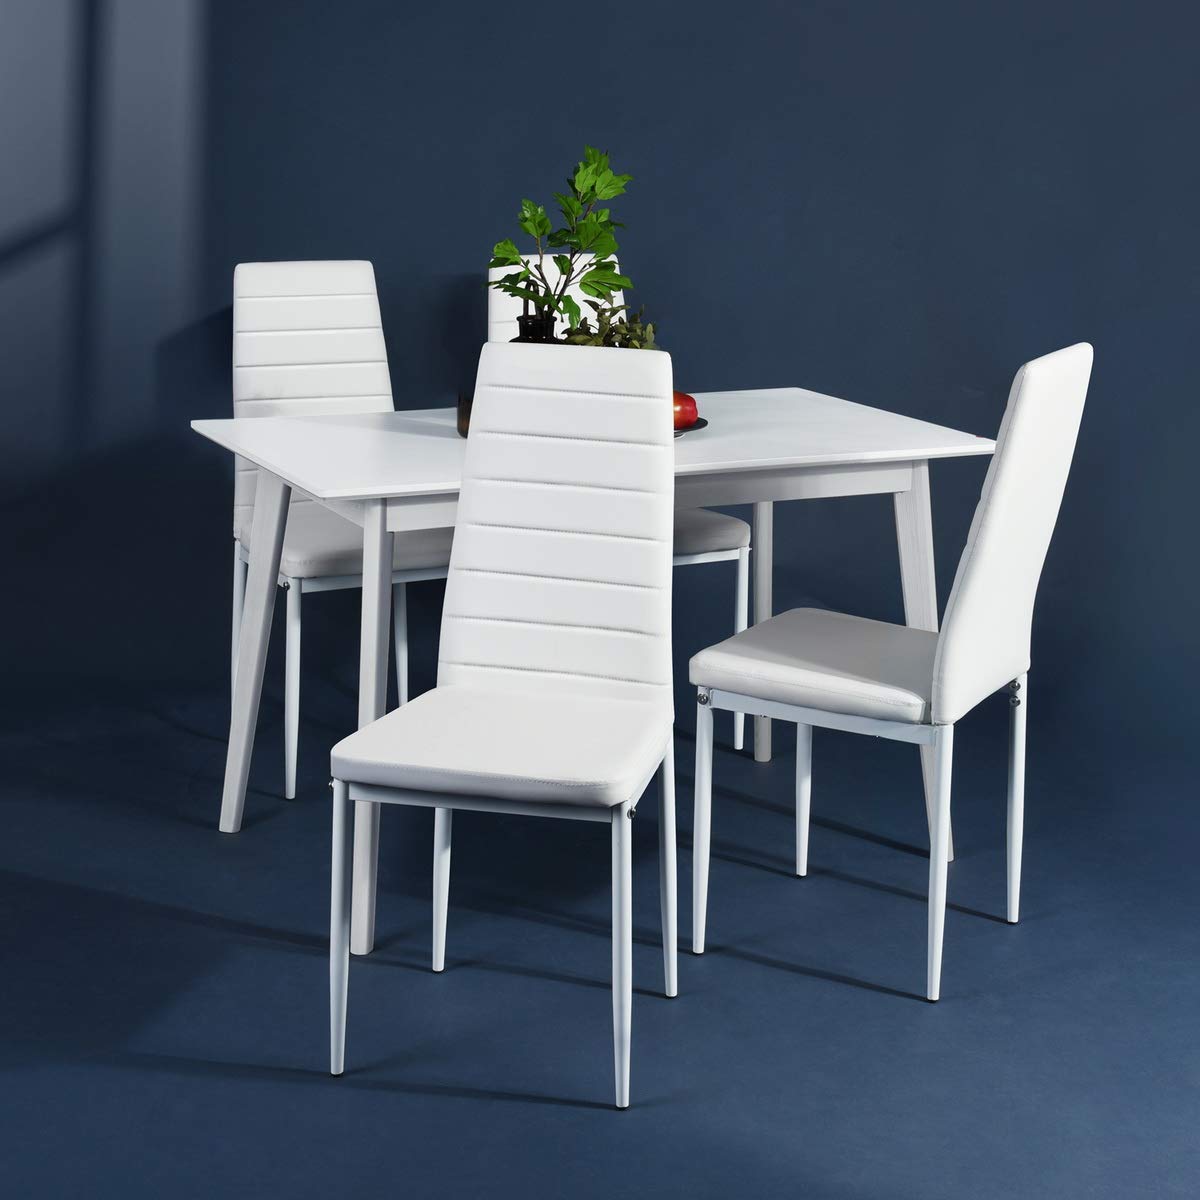 2. Aingoo White Kitchen Chair Set